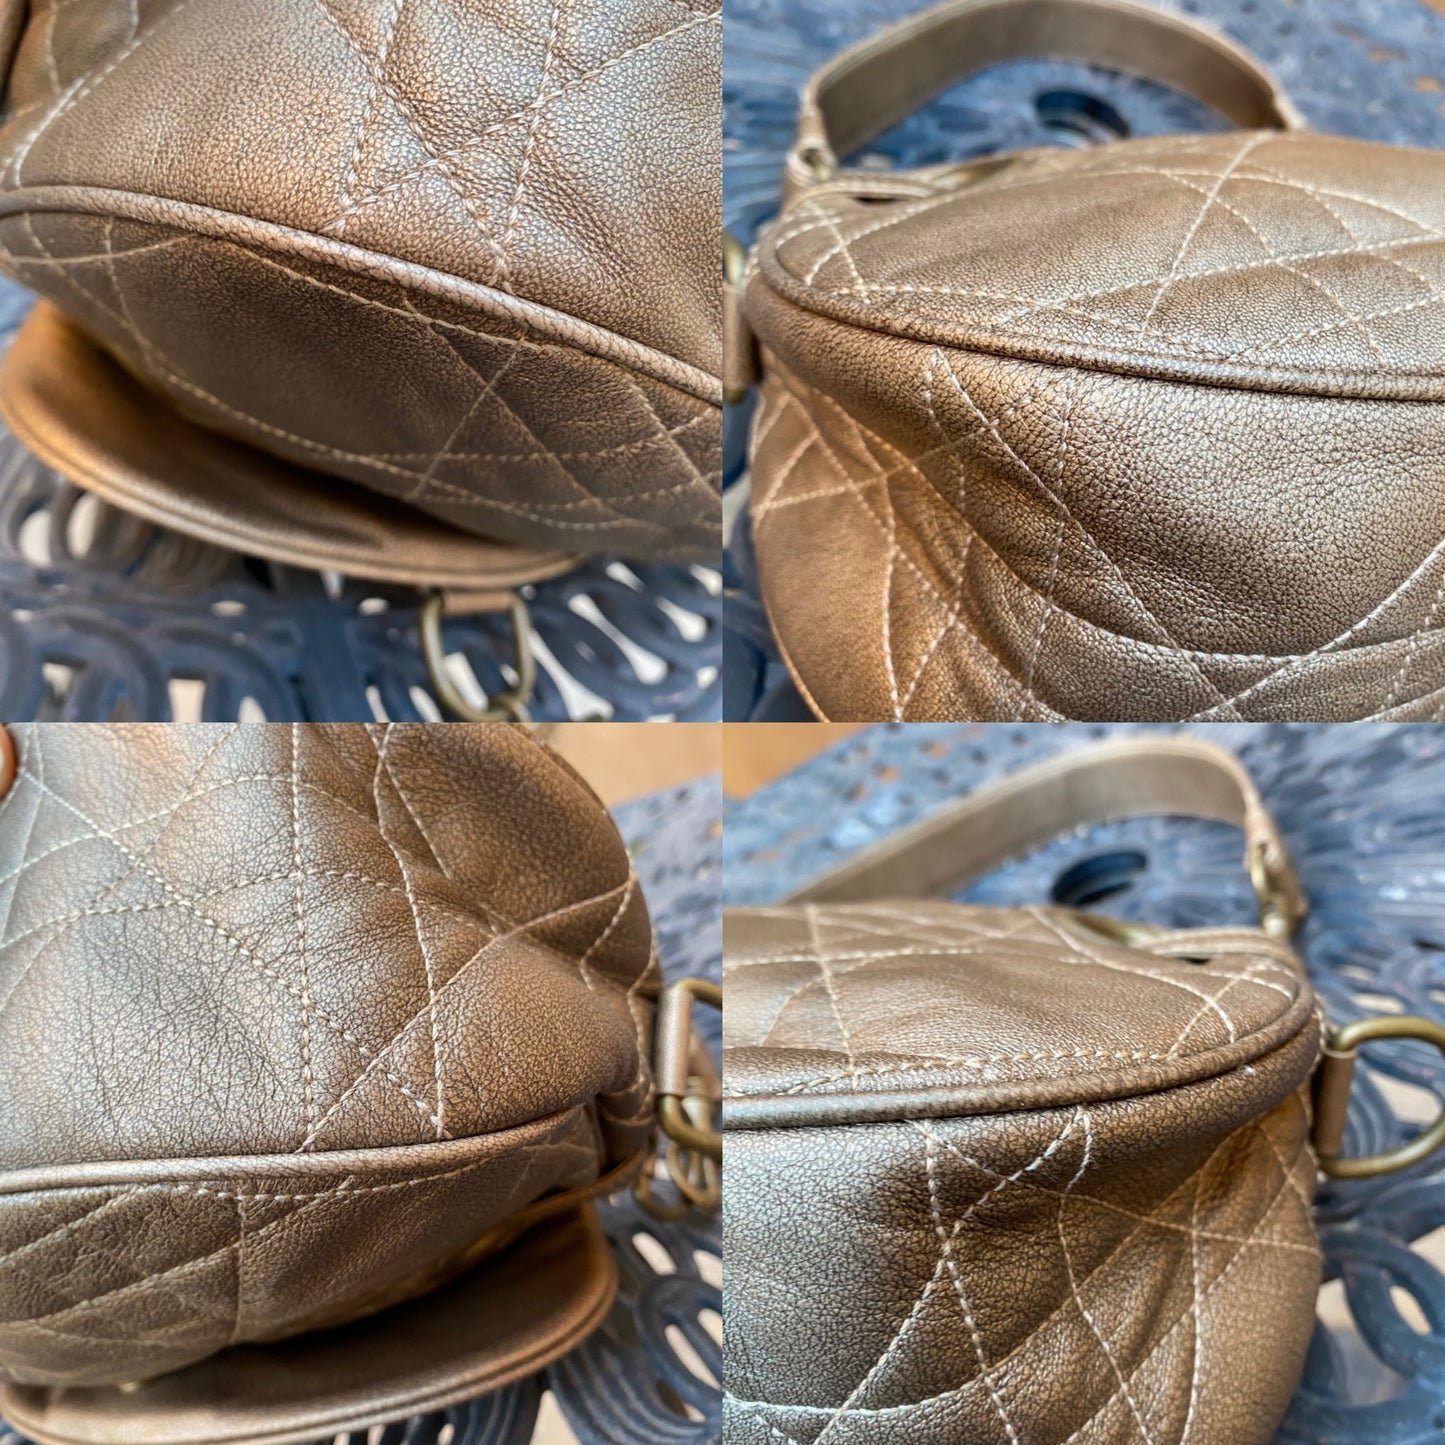 Dior Vintage Cannage Leather Flap Shoulder Bag